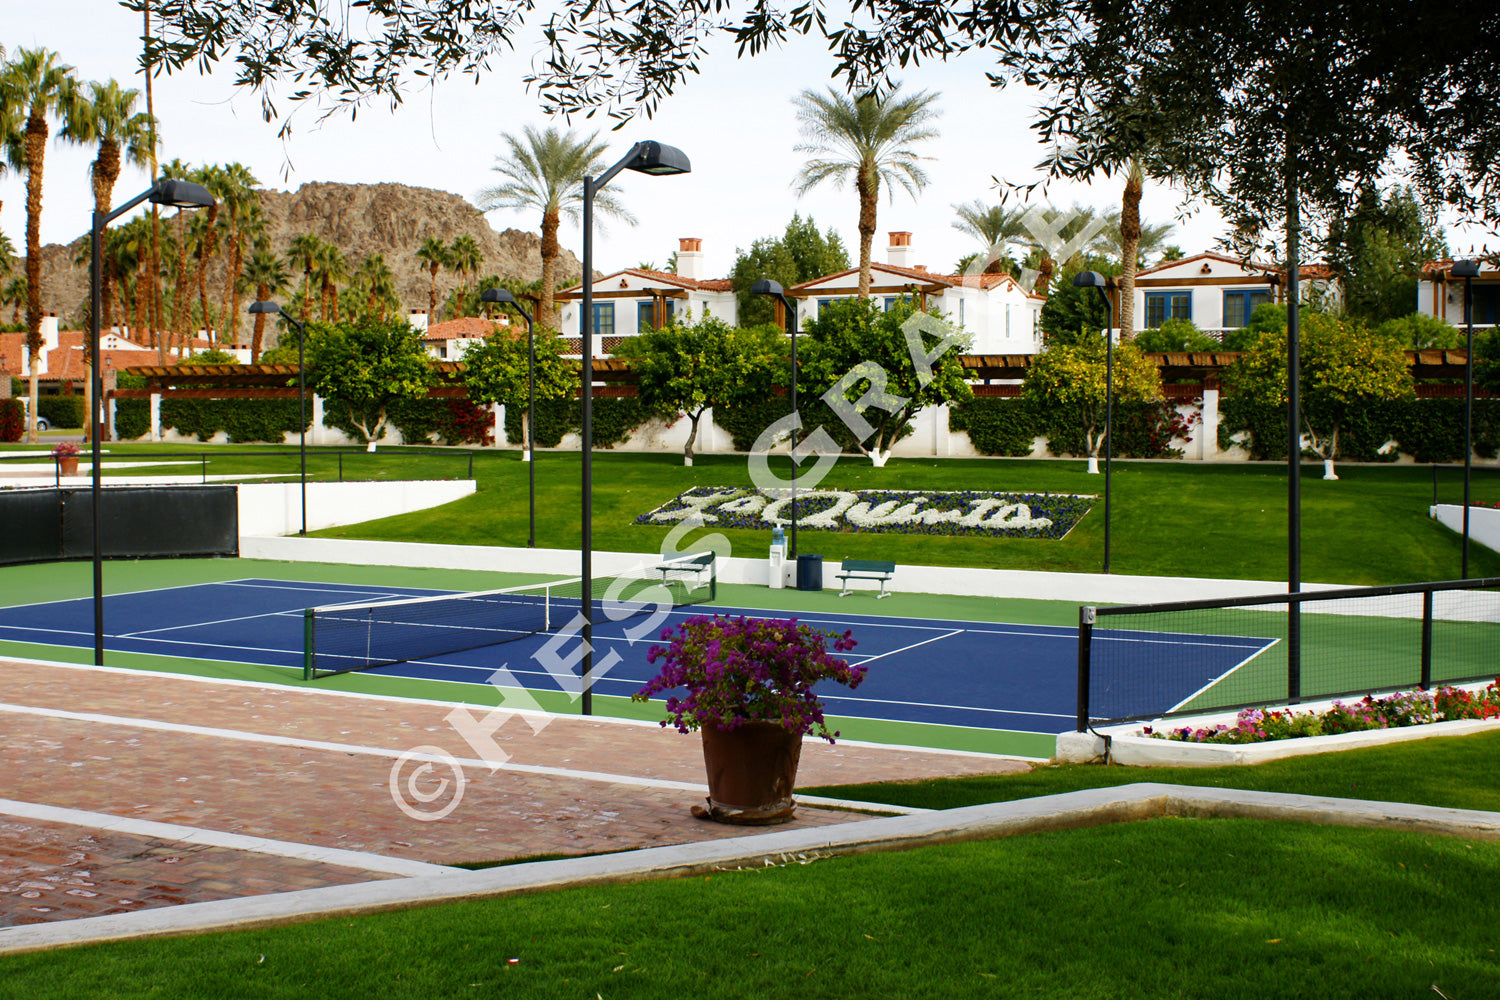 Photo of Centre Court tennis court at La Quinta